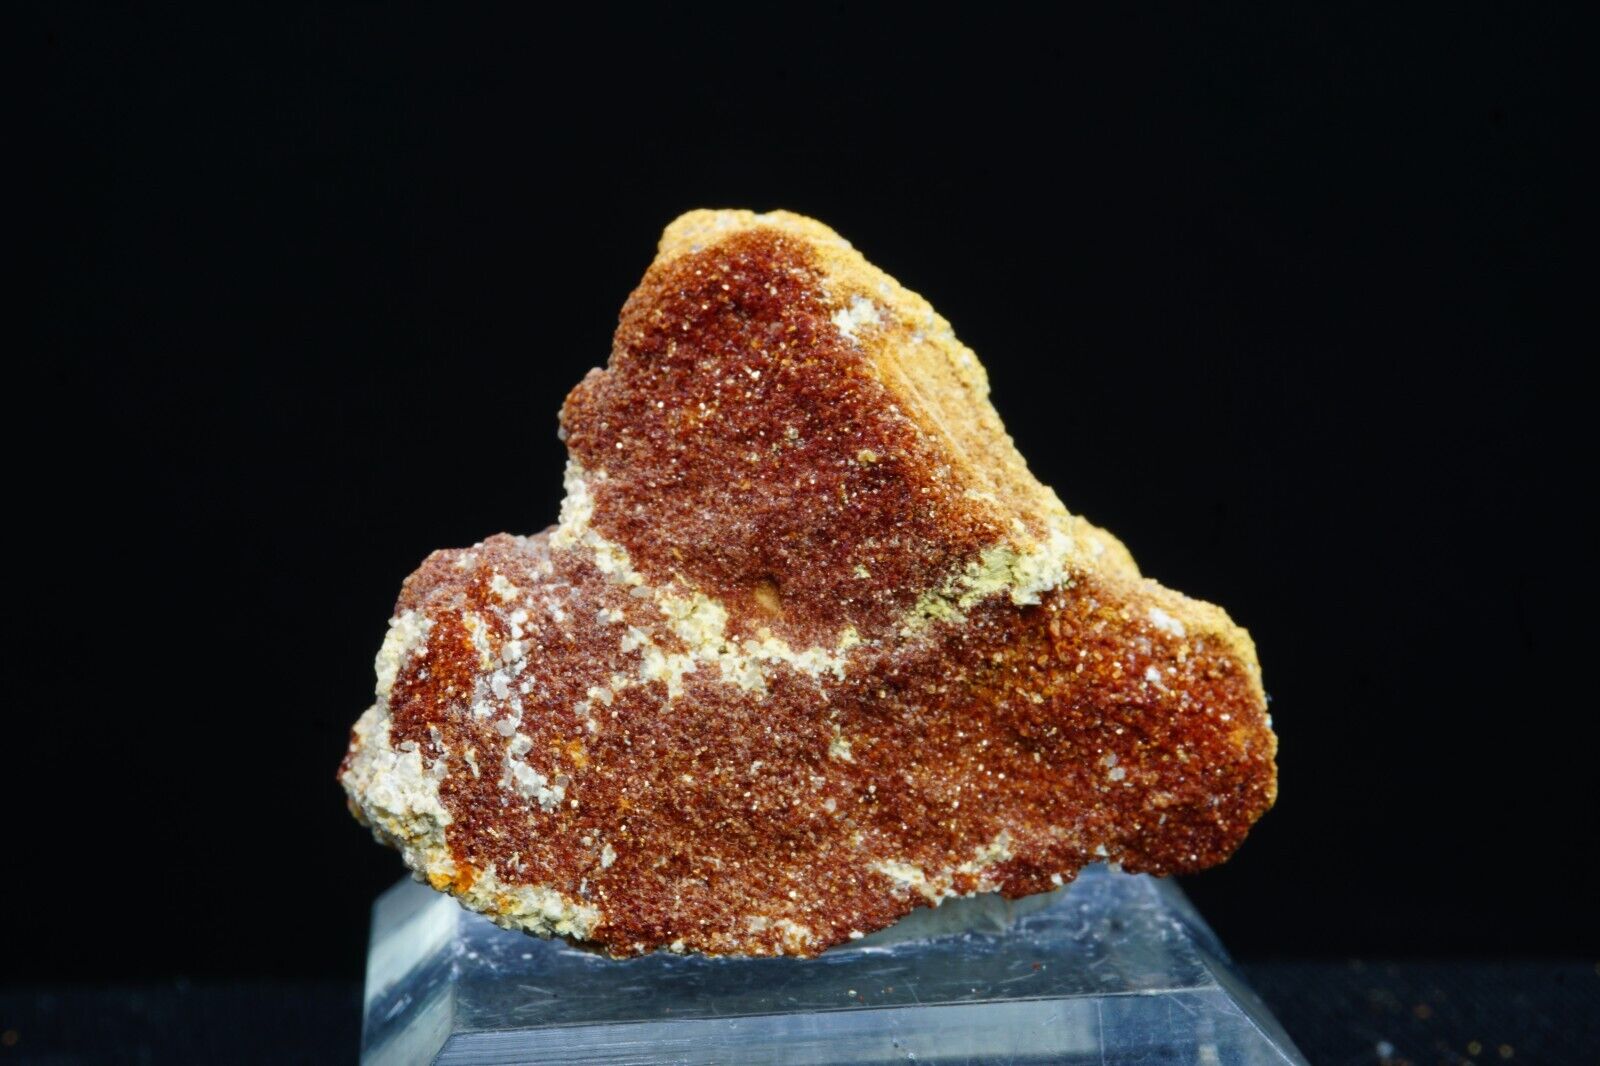 Copiapite / Rare Mineral Specimen / Dexter #7 Mine, Utah